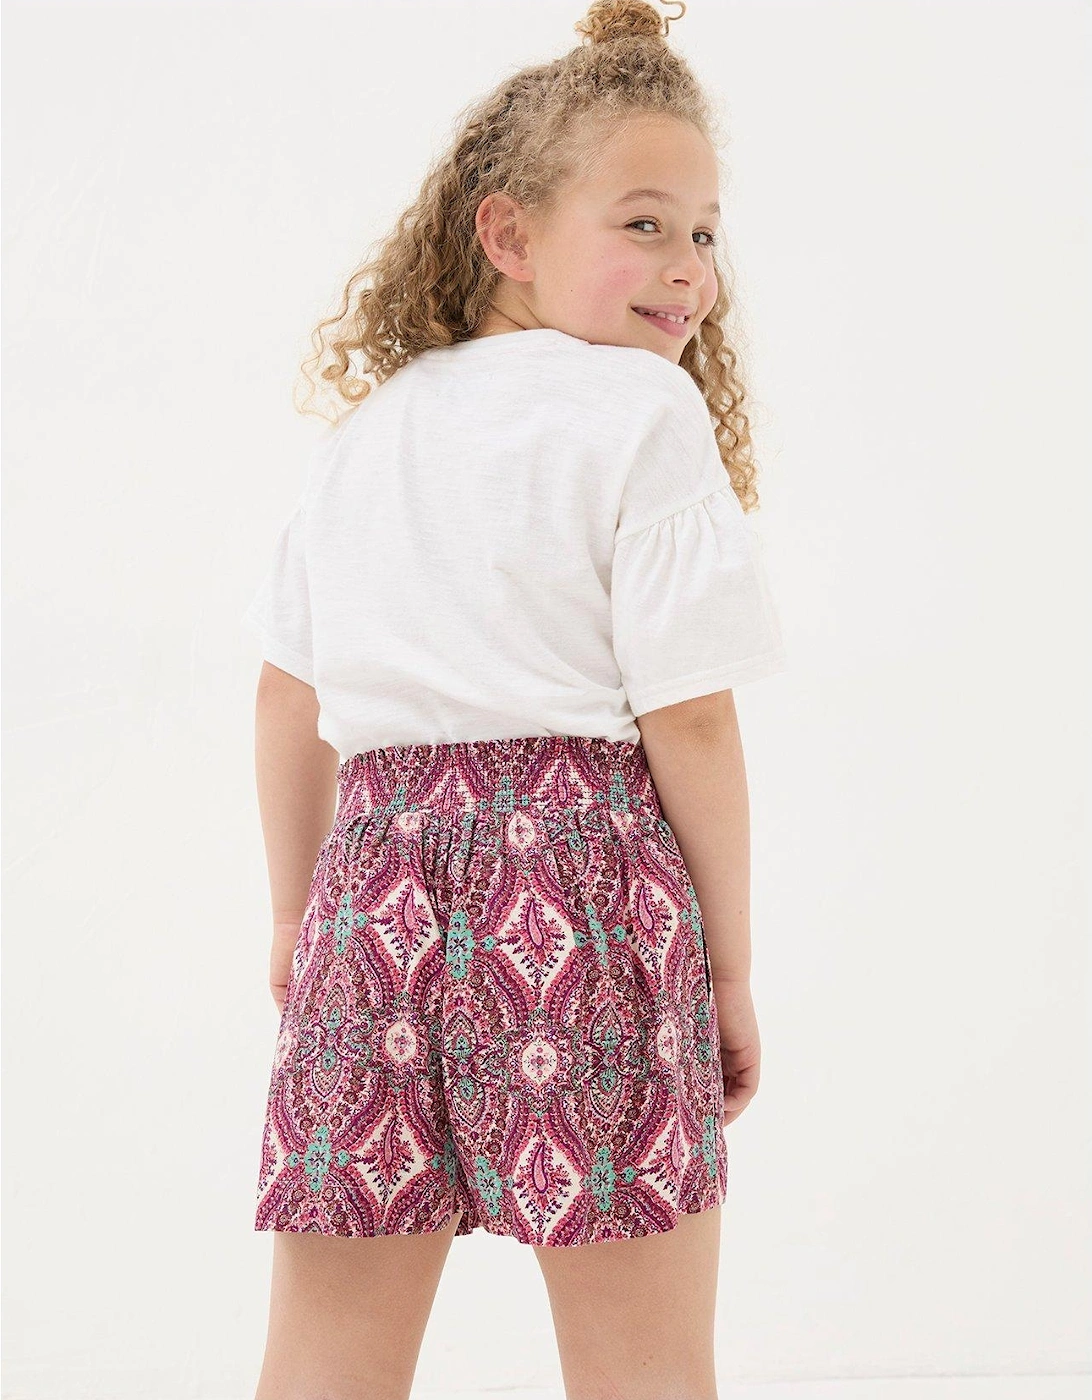 Girls Paisley Print Flippy Shorts - Multi